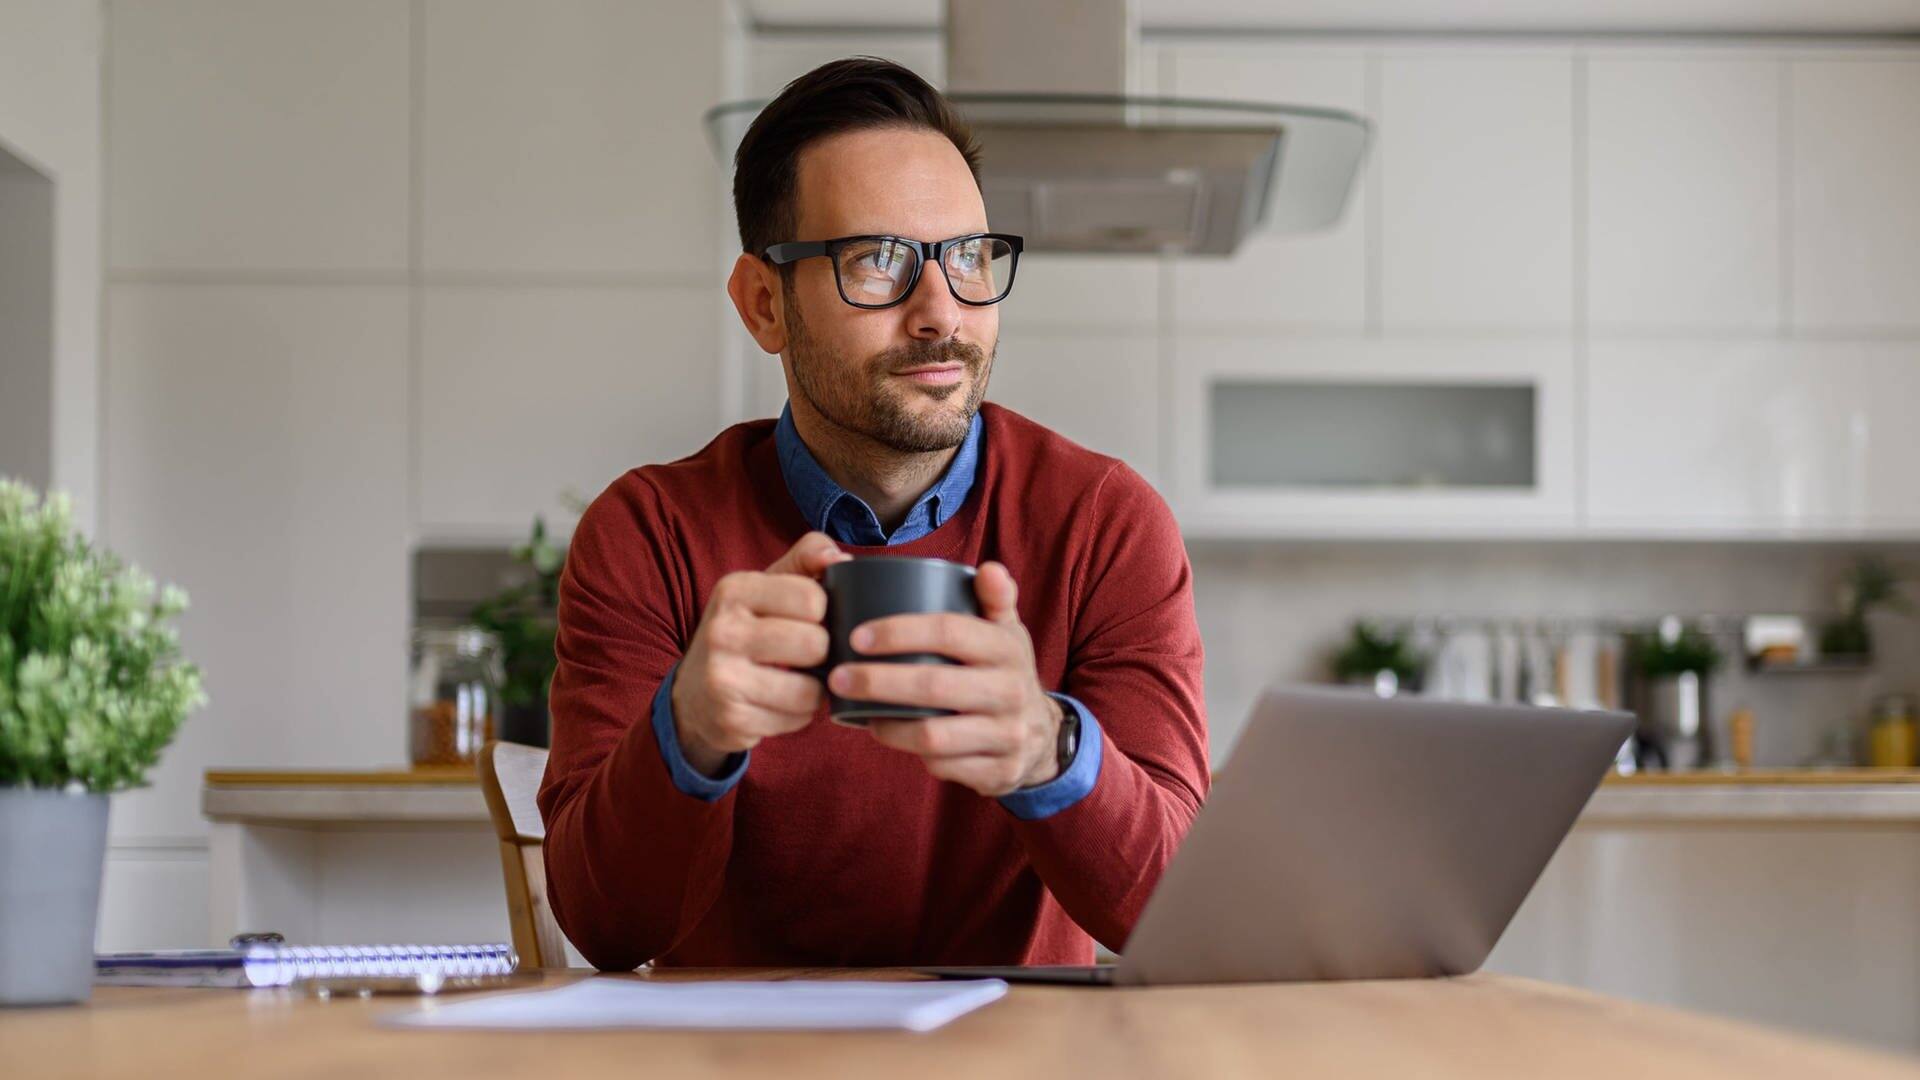 Mann mit Kaffeetasse auf dem Tisch sitzt in der Küche vor einem Laptop. Er denkt über eine mögliche Beförderung im Job nach und sucht nach Tipps für den Aufsteig und die Karriere.